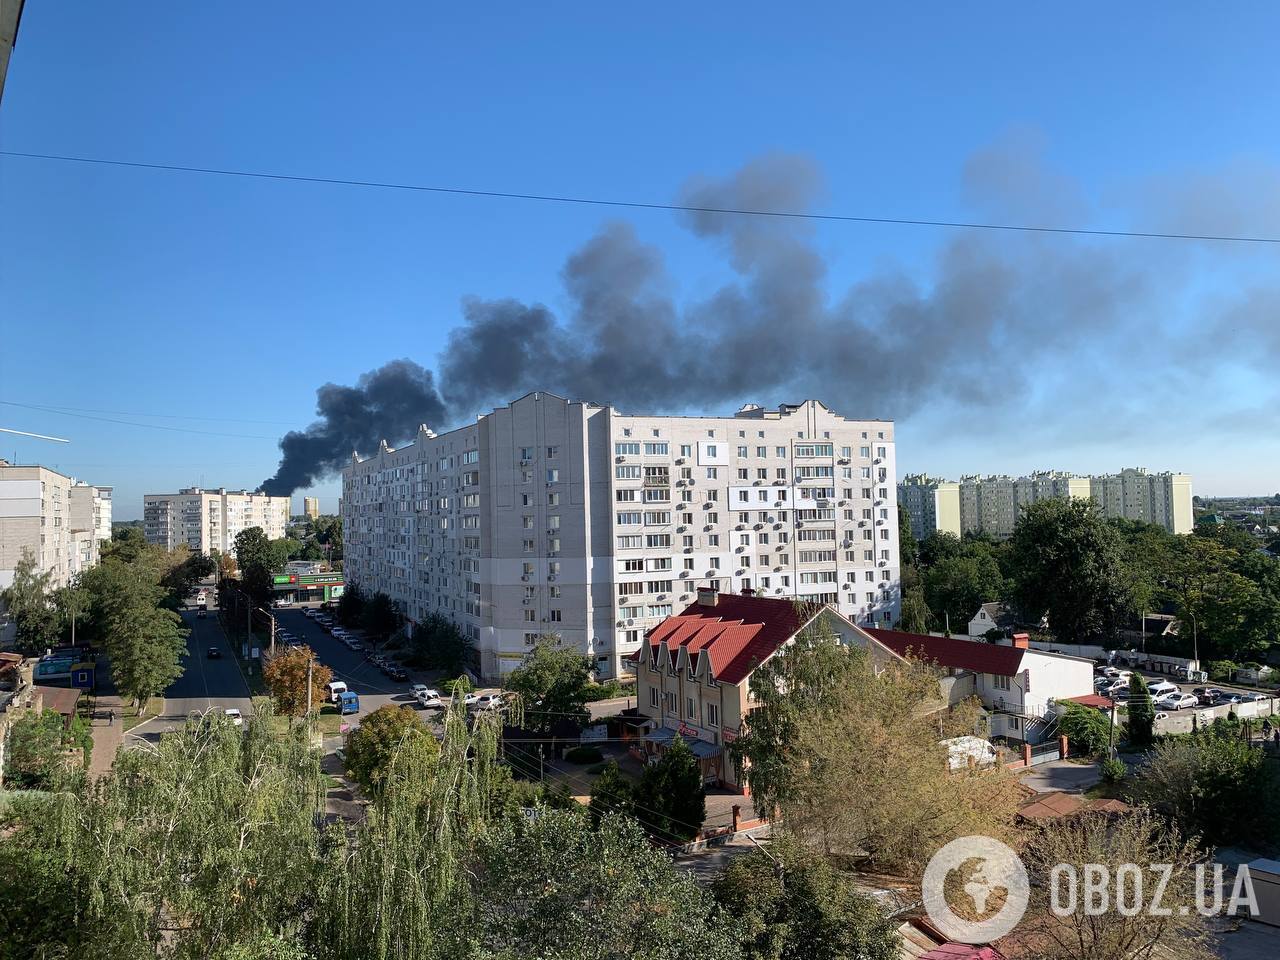 В Борисполе произошел пожар на предприятии, тушили полдня. Фото и видео